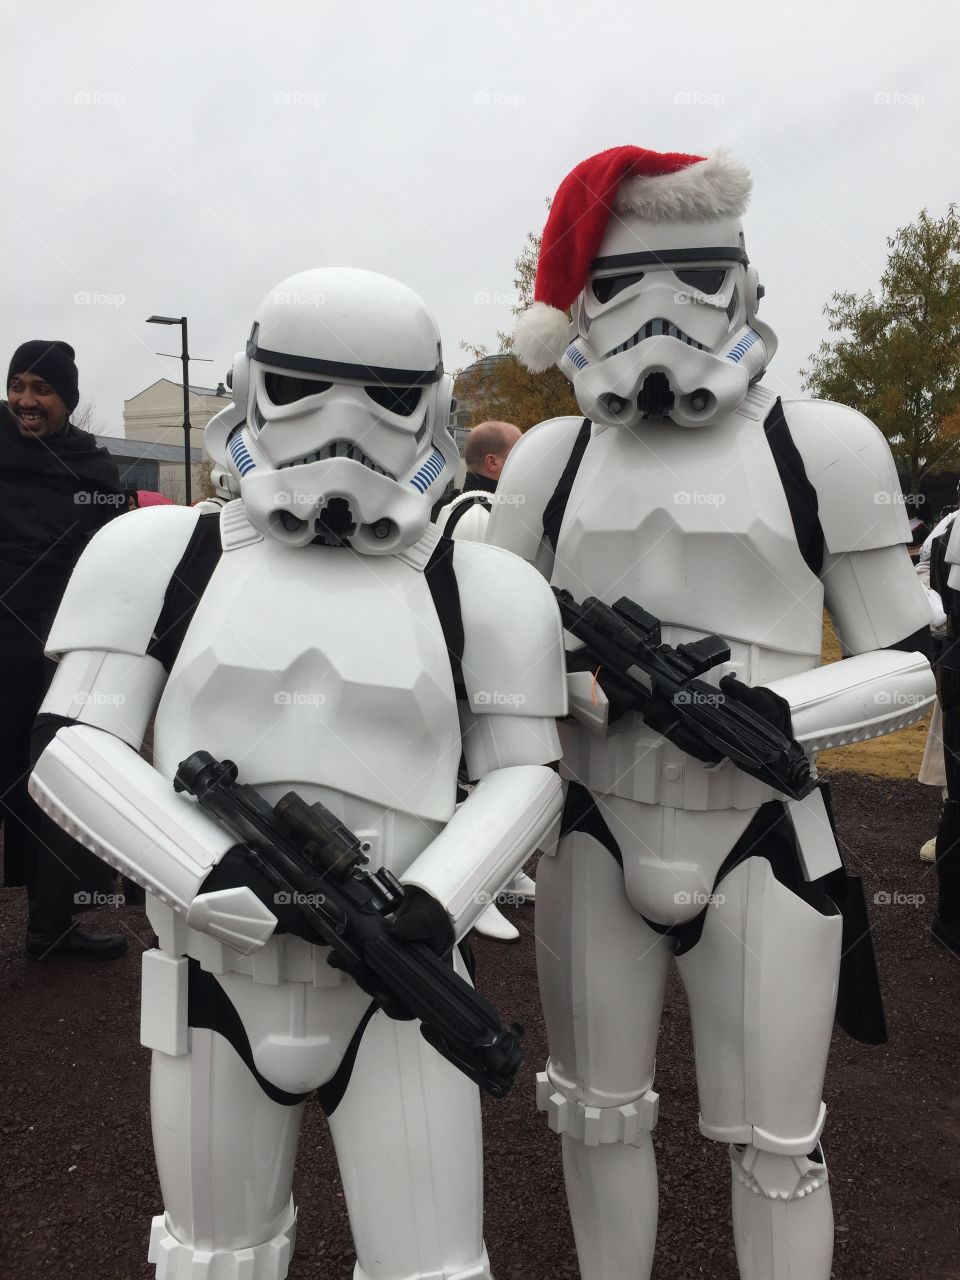 Star Wars Christmas 